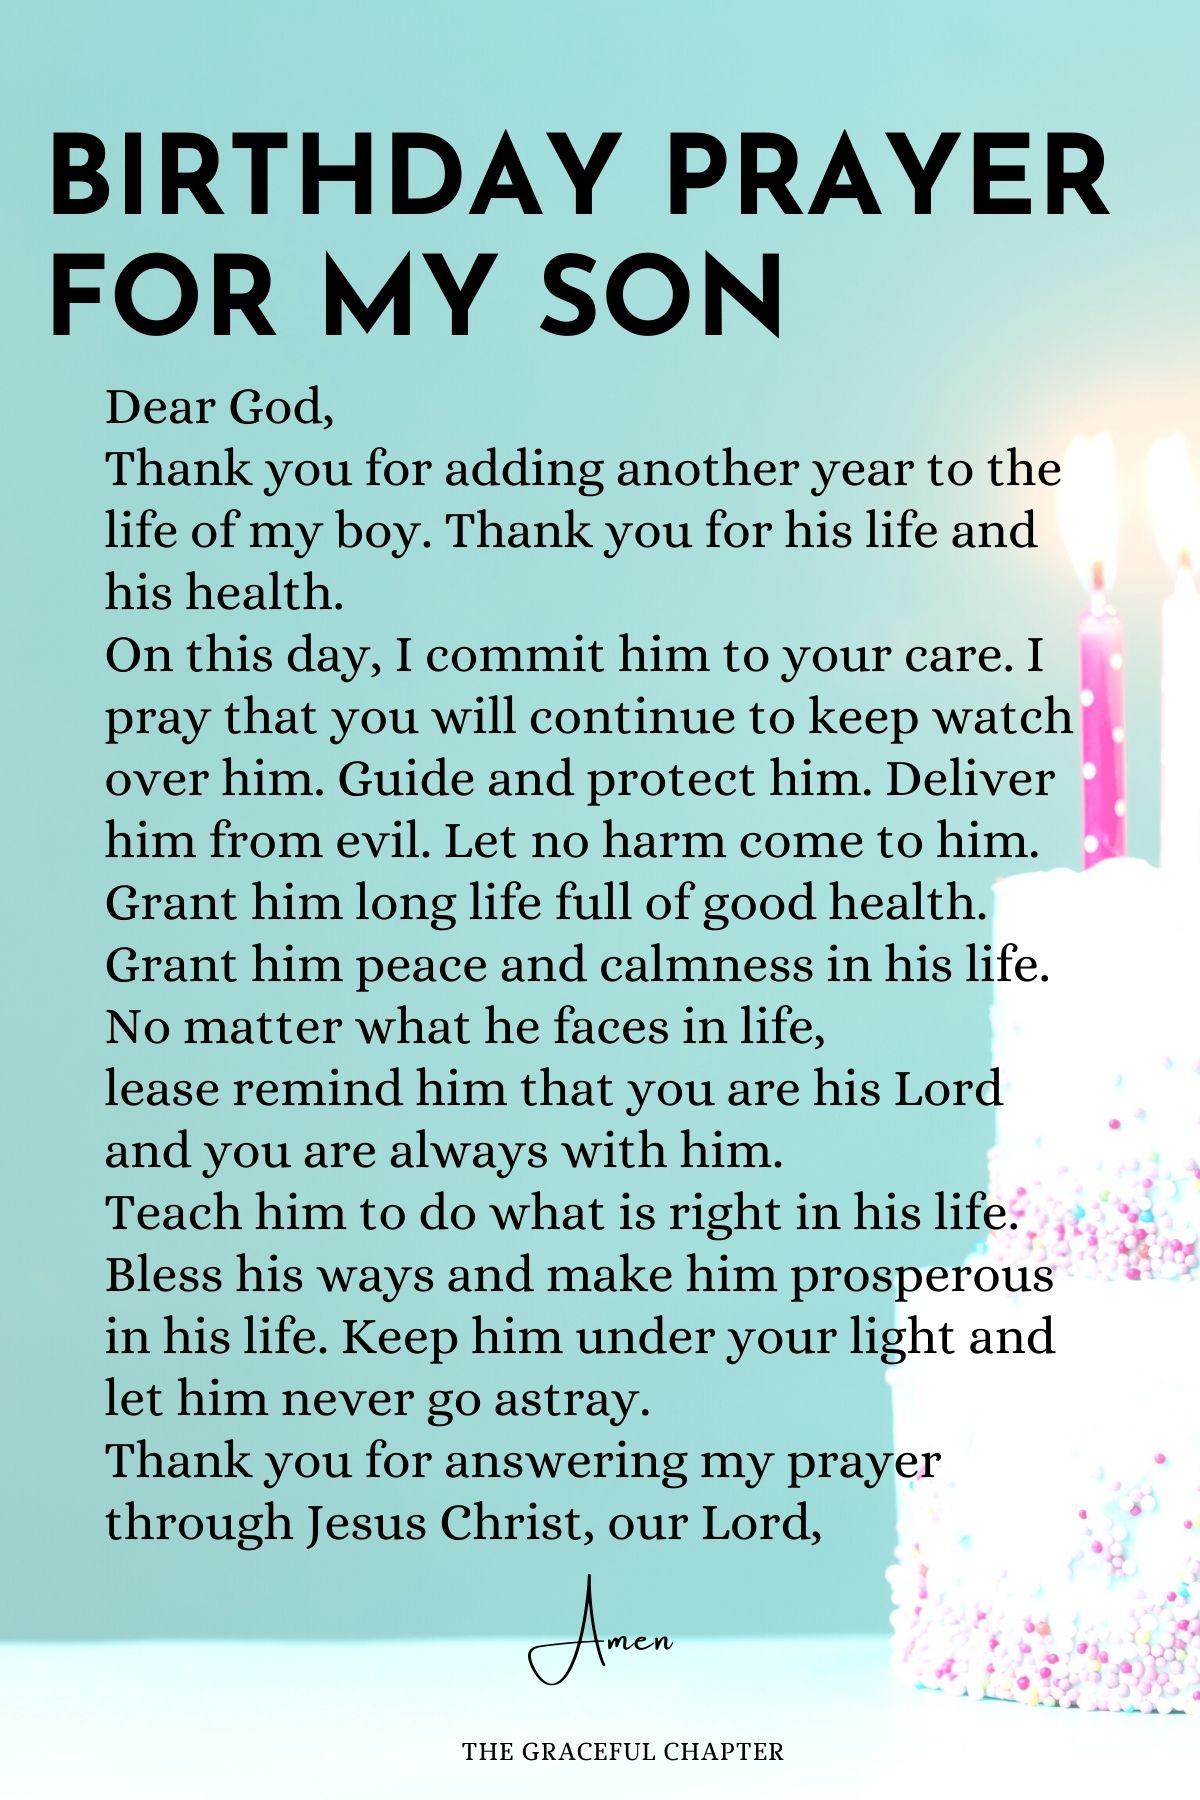 Birthday prayer for my son